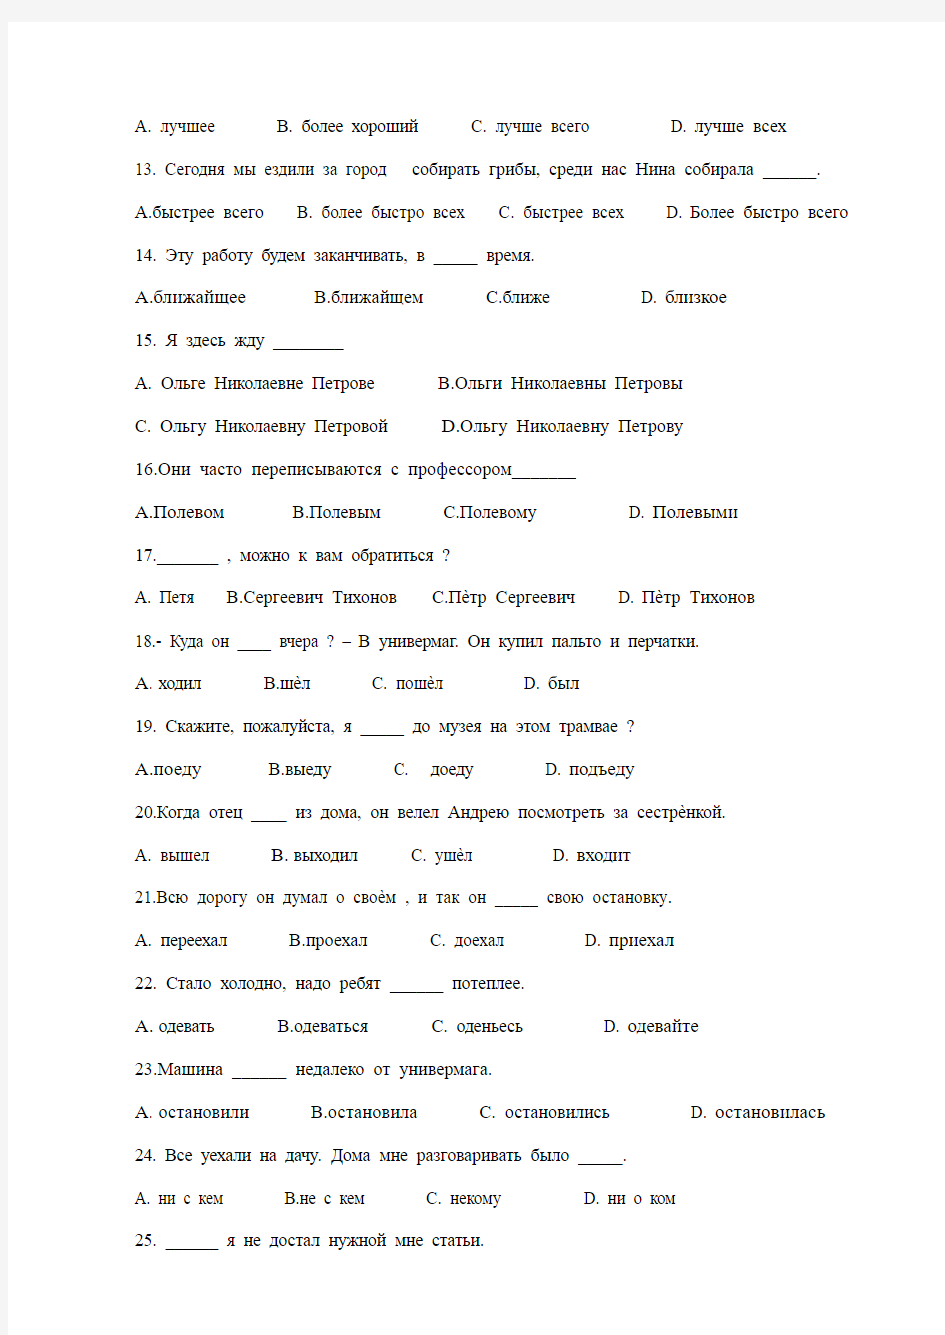 俄语语法练习题三